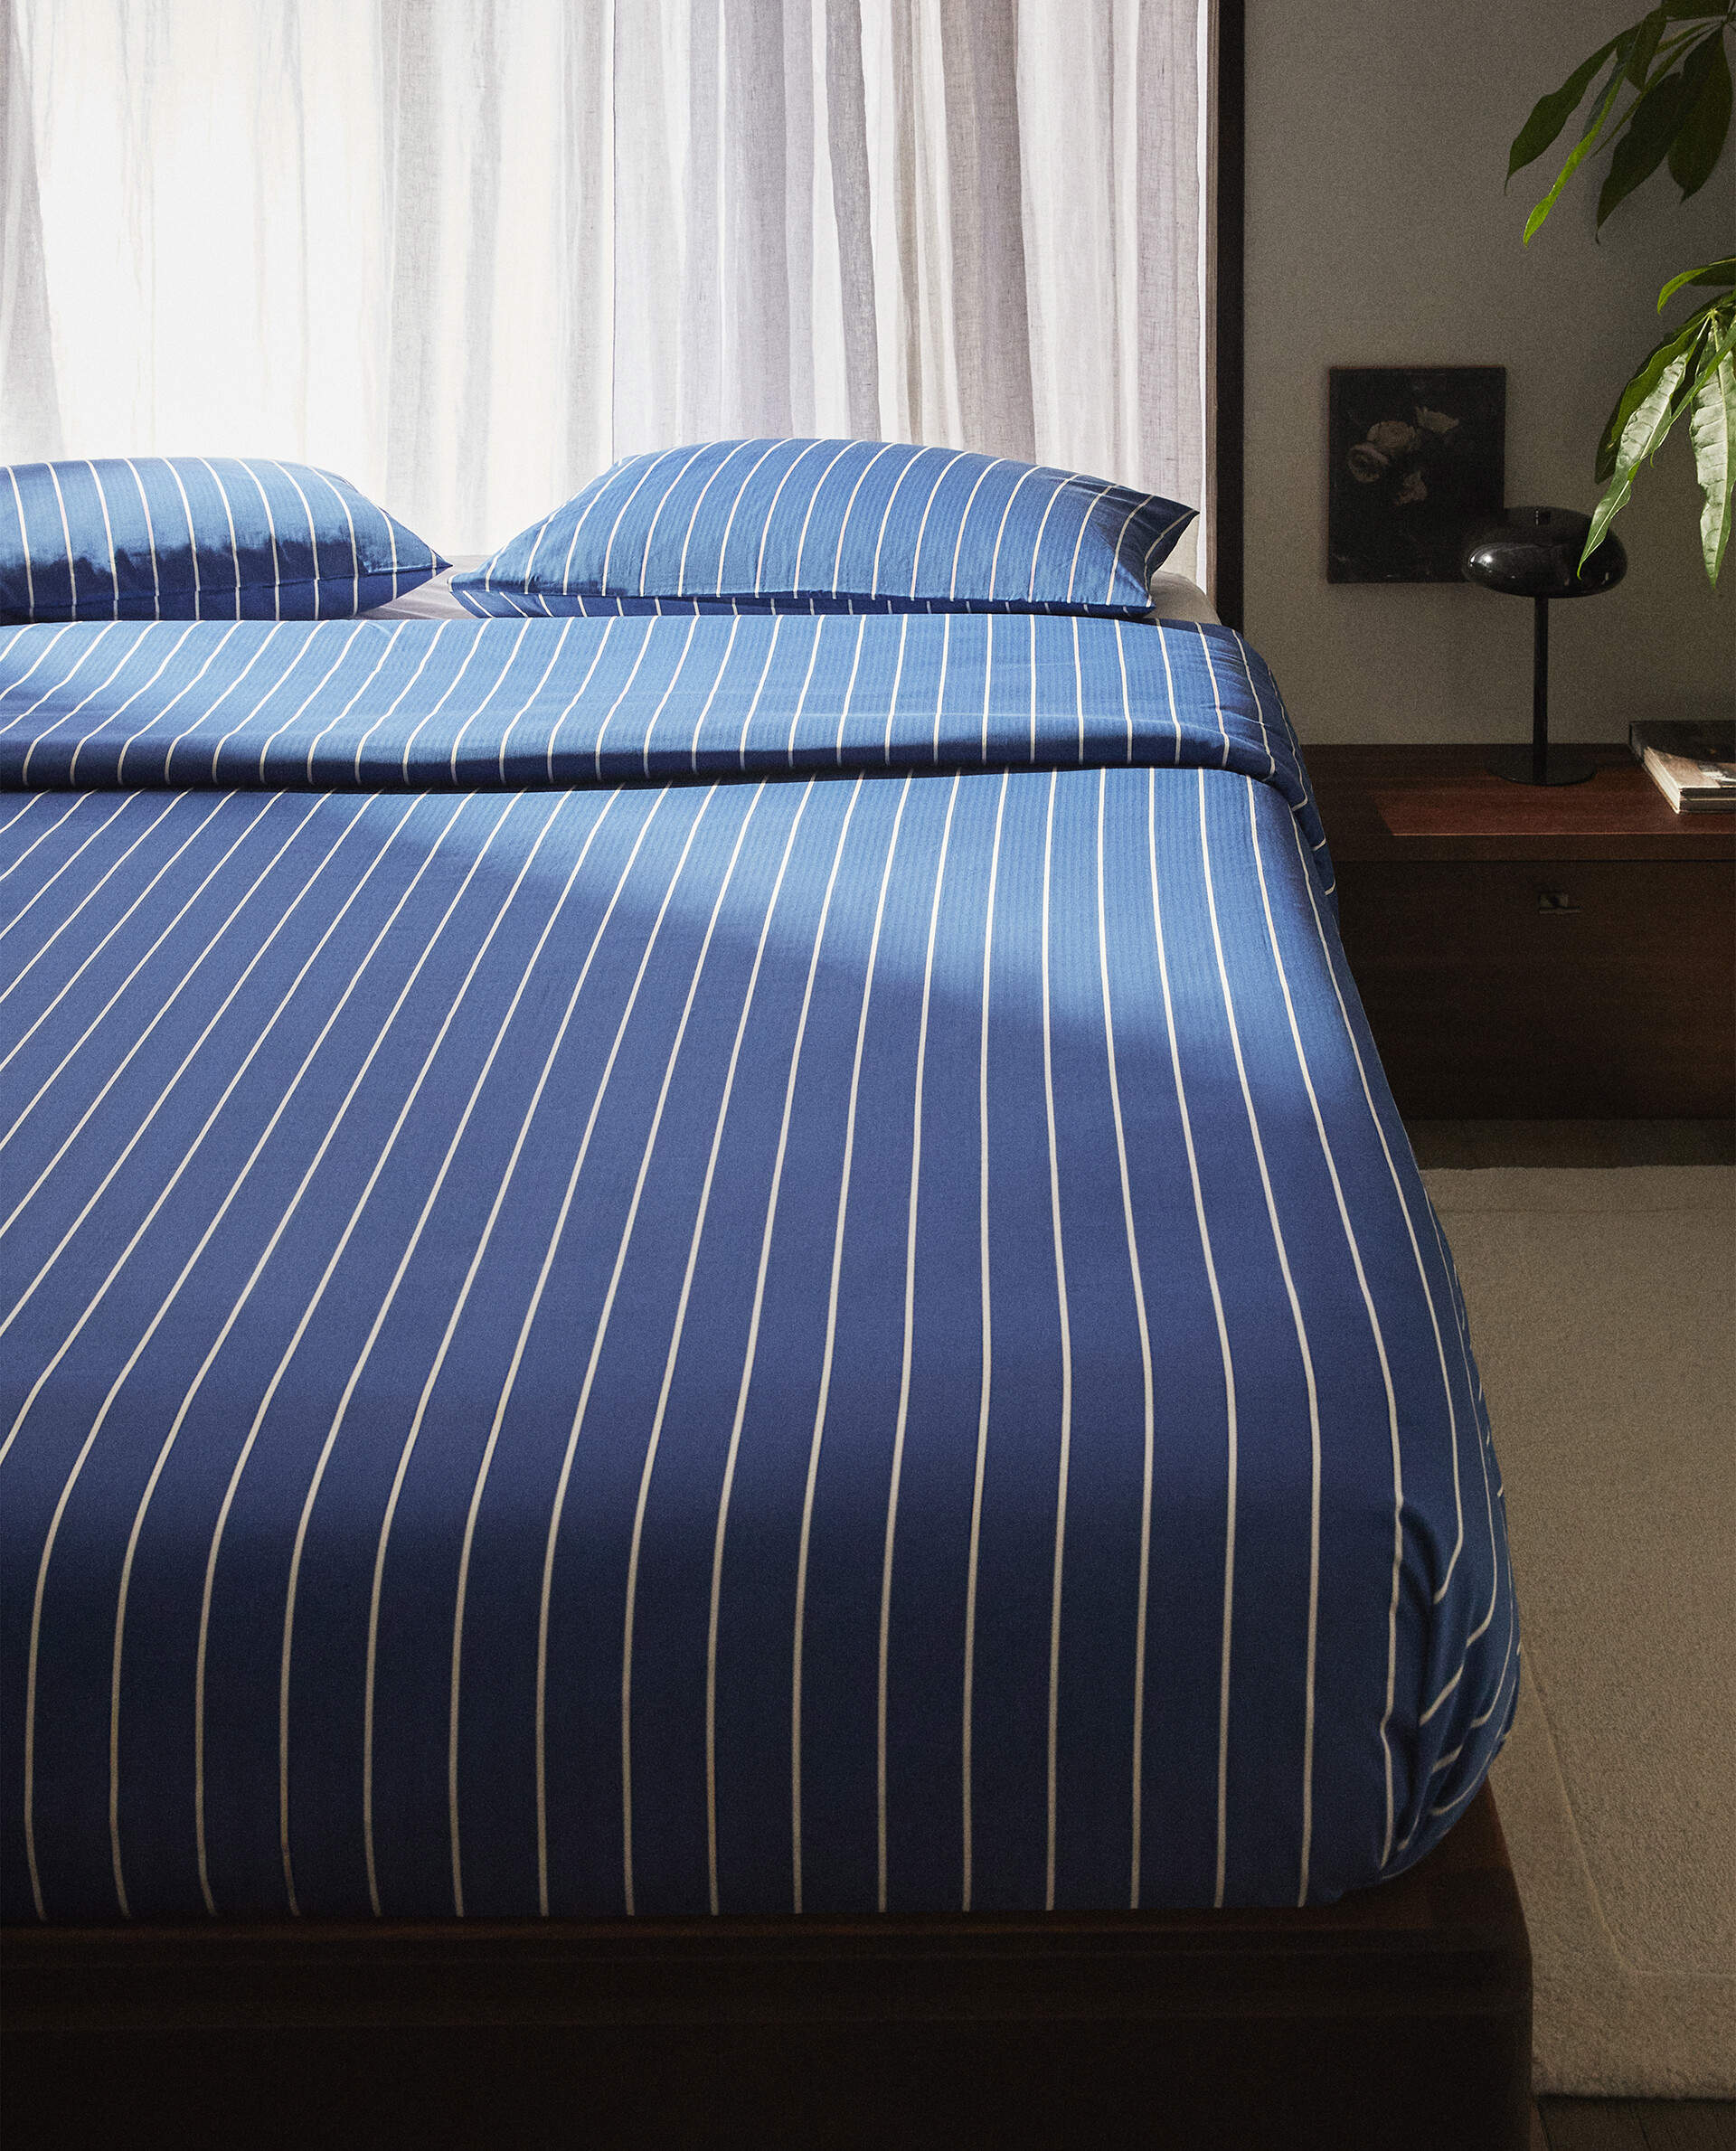 Juego de cama color azul marino a rayas blancas, de Zara Home.